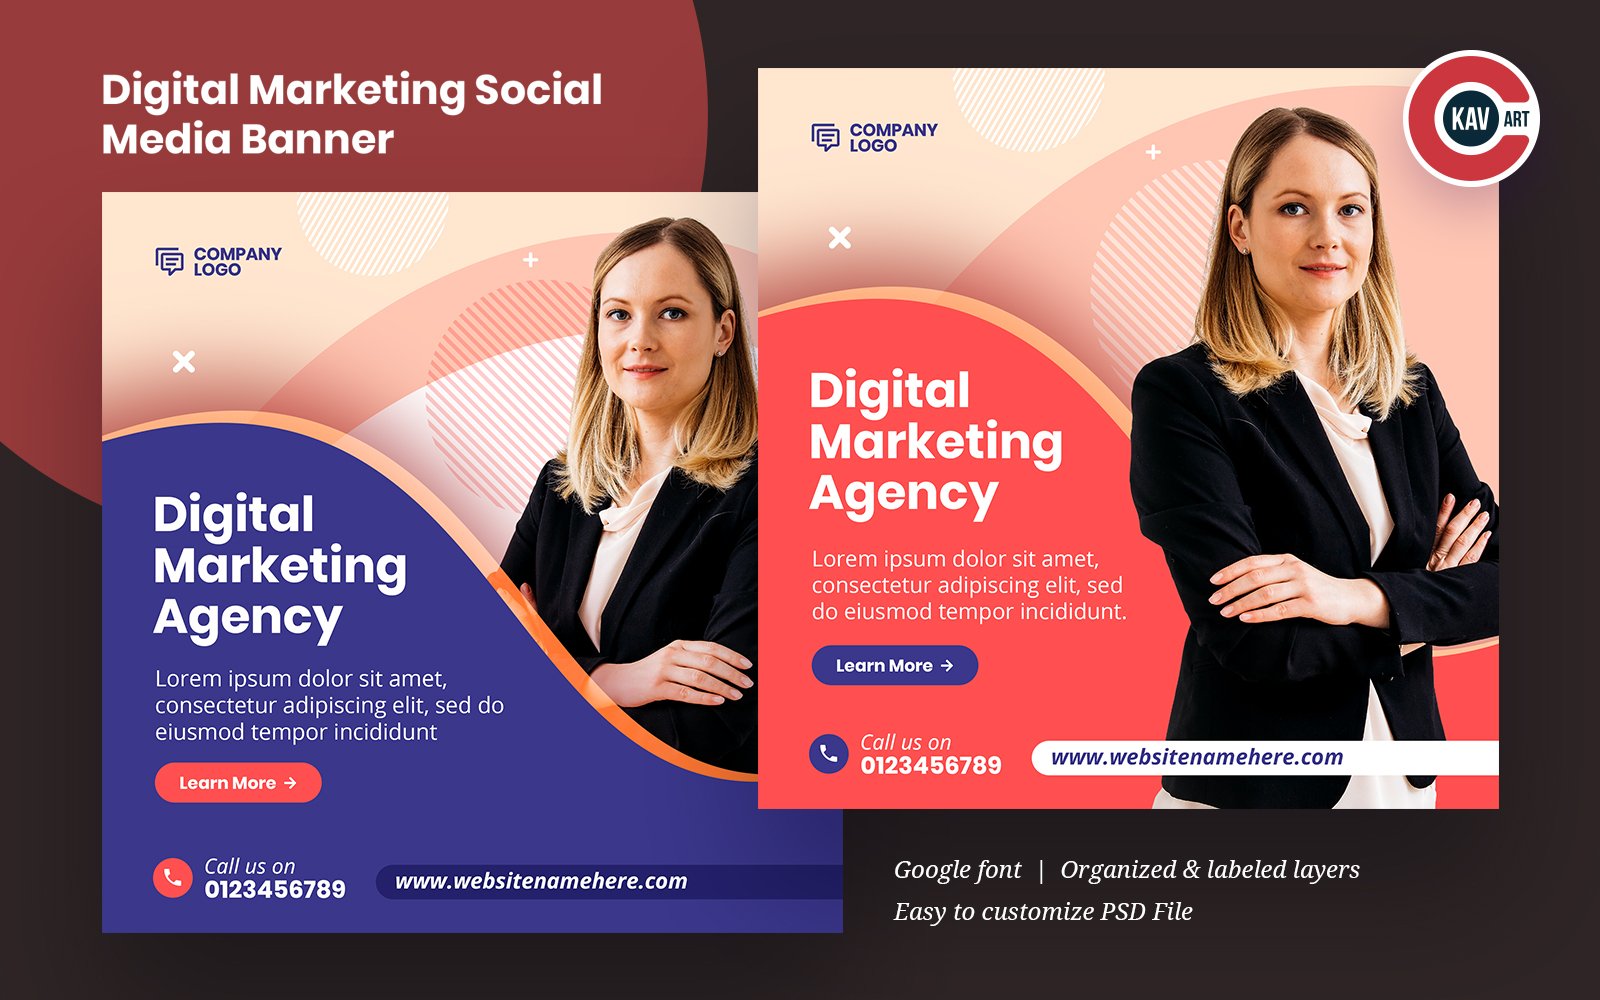 Digital Marketing Social Media Banner Template